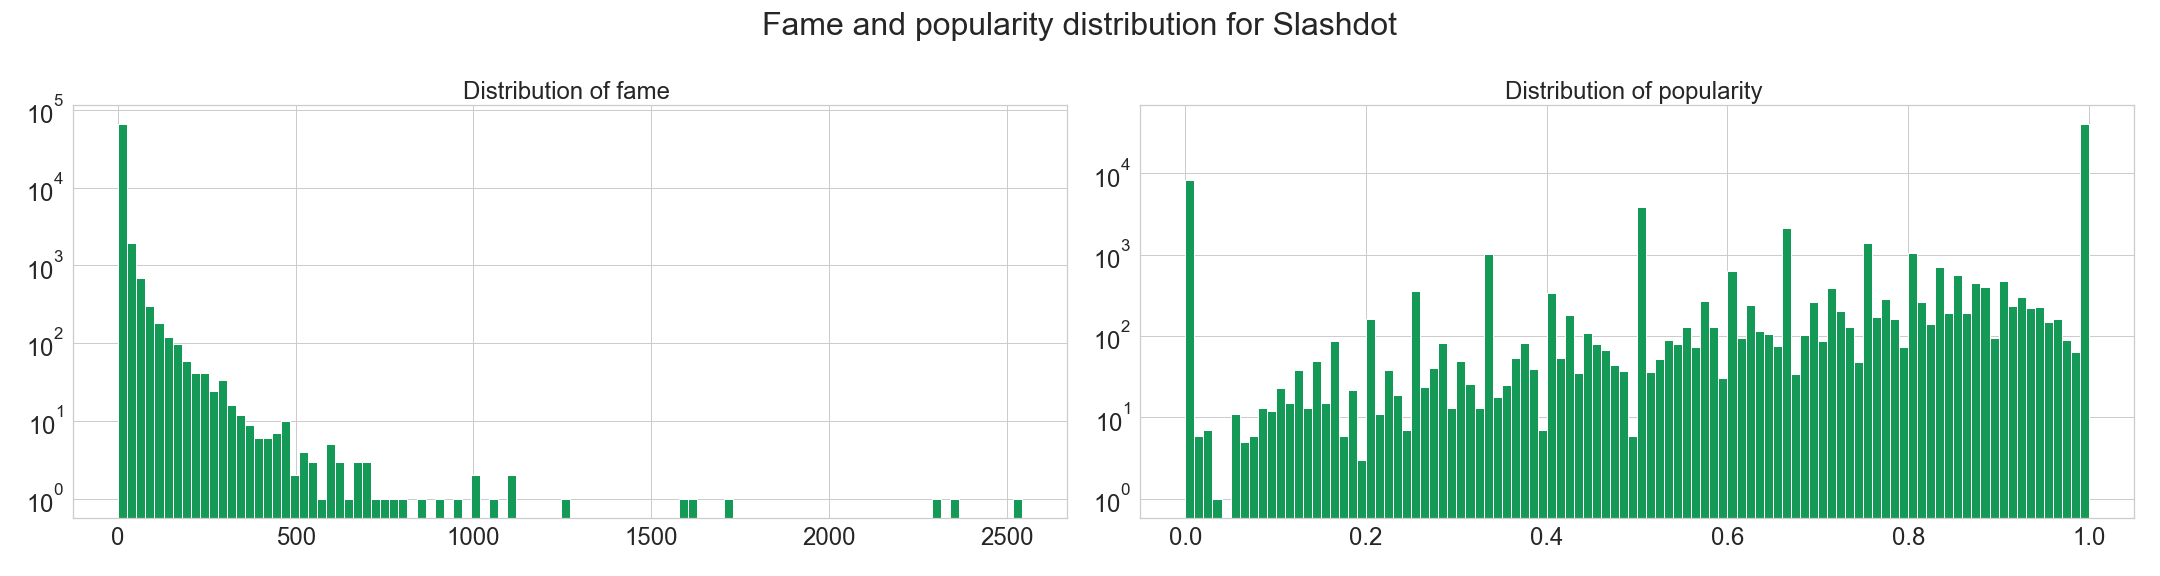 Fame and population distribution for Slashdot